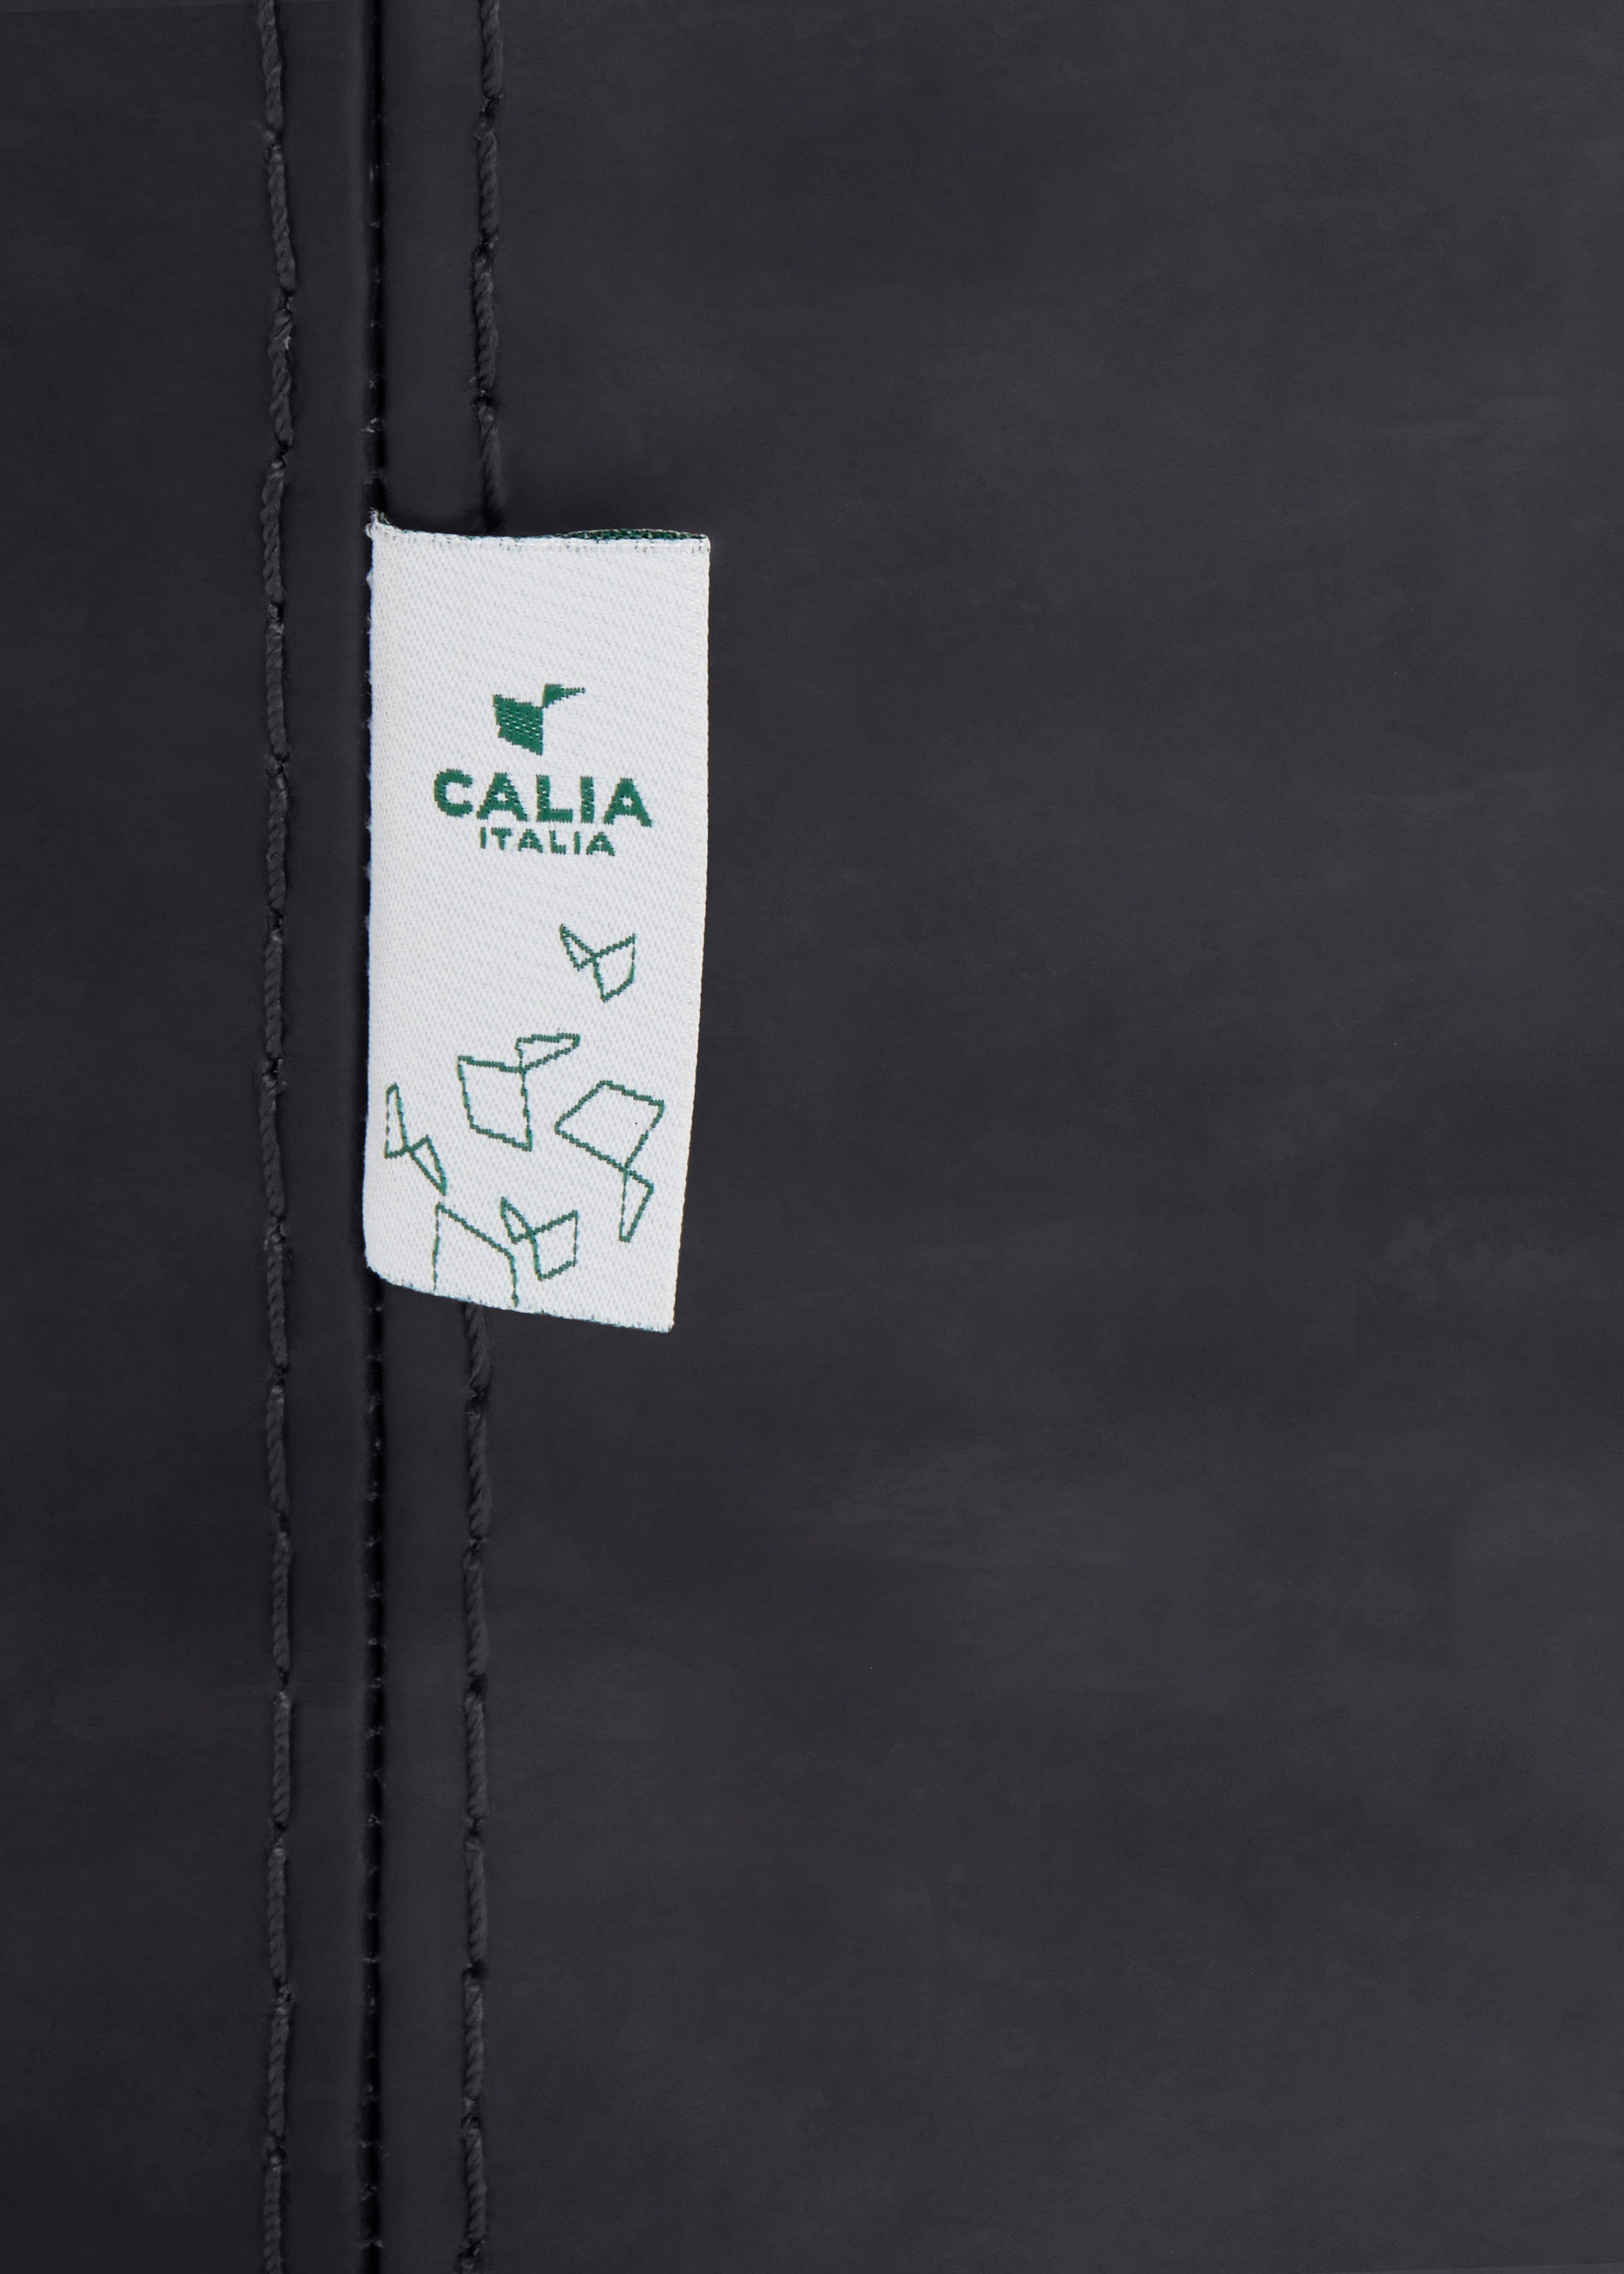 Gaia, Luxus-Microfaser Ginevra mit Care Hydro black ITALIA Sessel CALIA